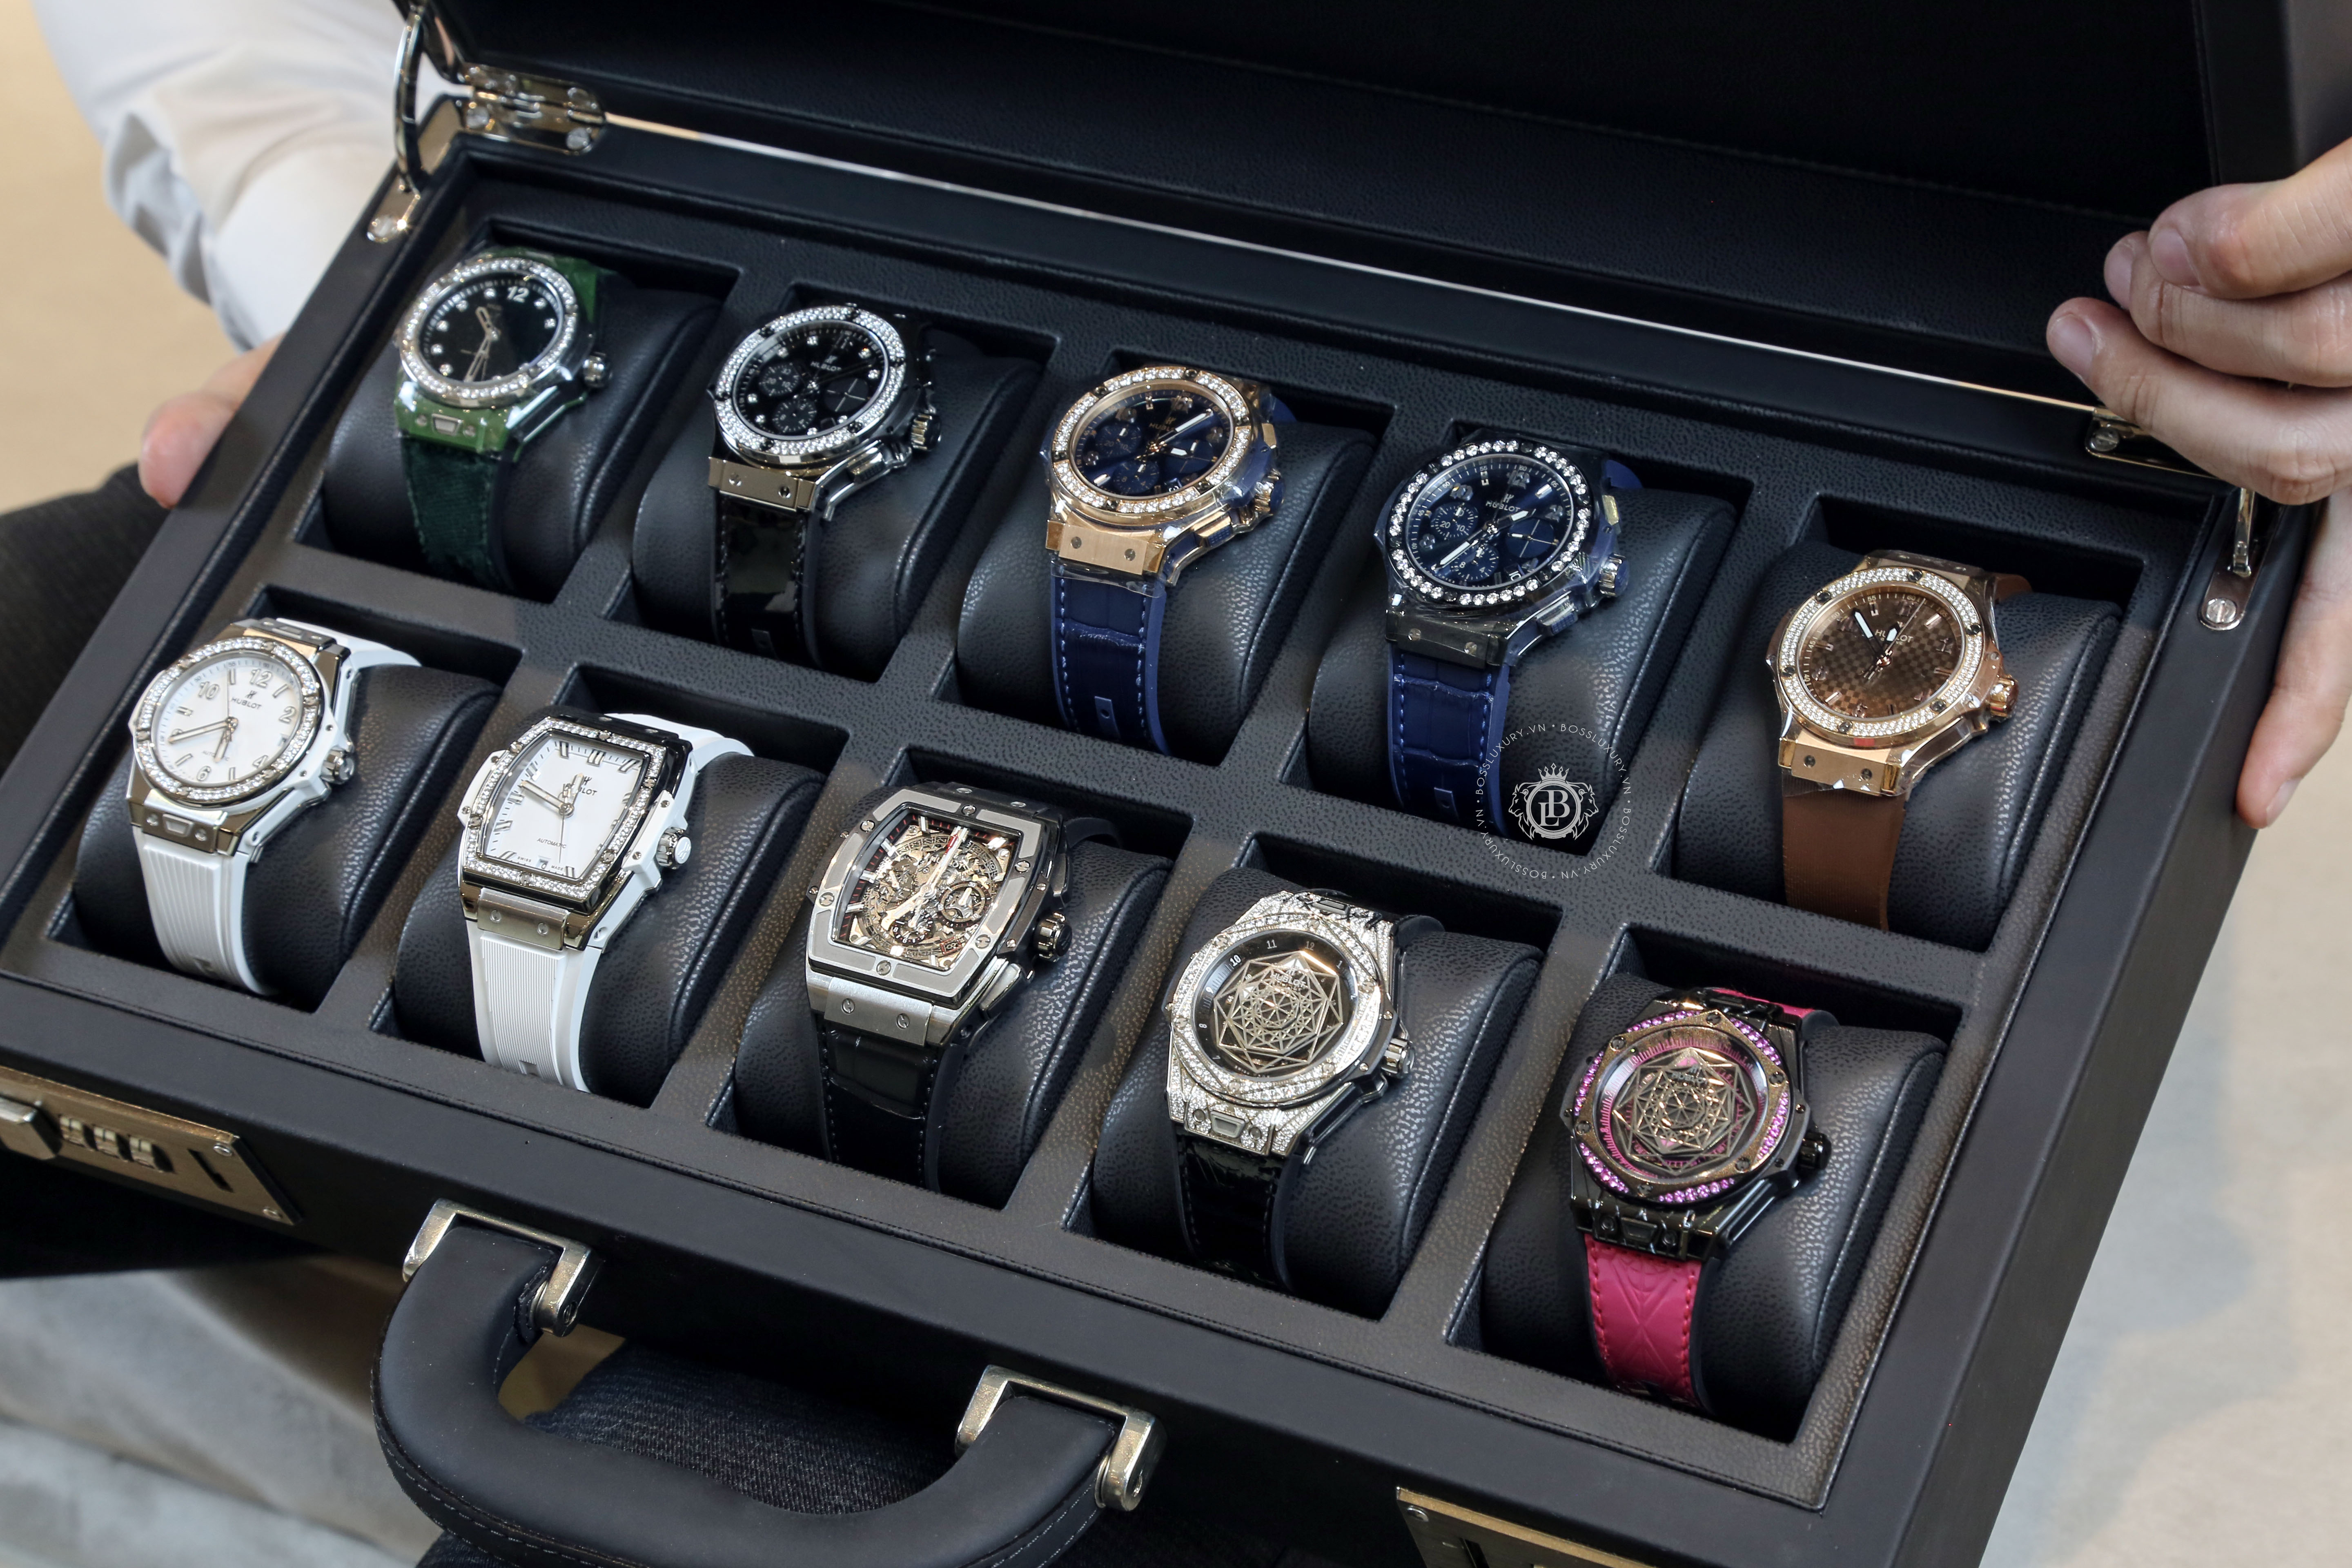 Boss Luxury chỉ ra 5 lưu ý quan trọng khi chọn mua đồng hồ cao cấp - Ảnh 1.